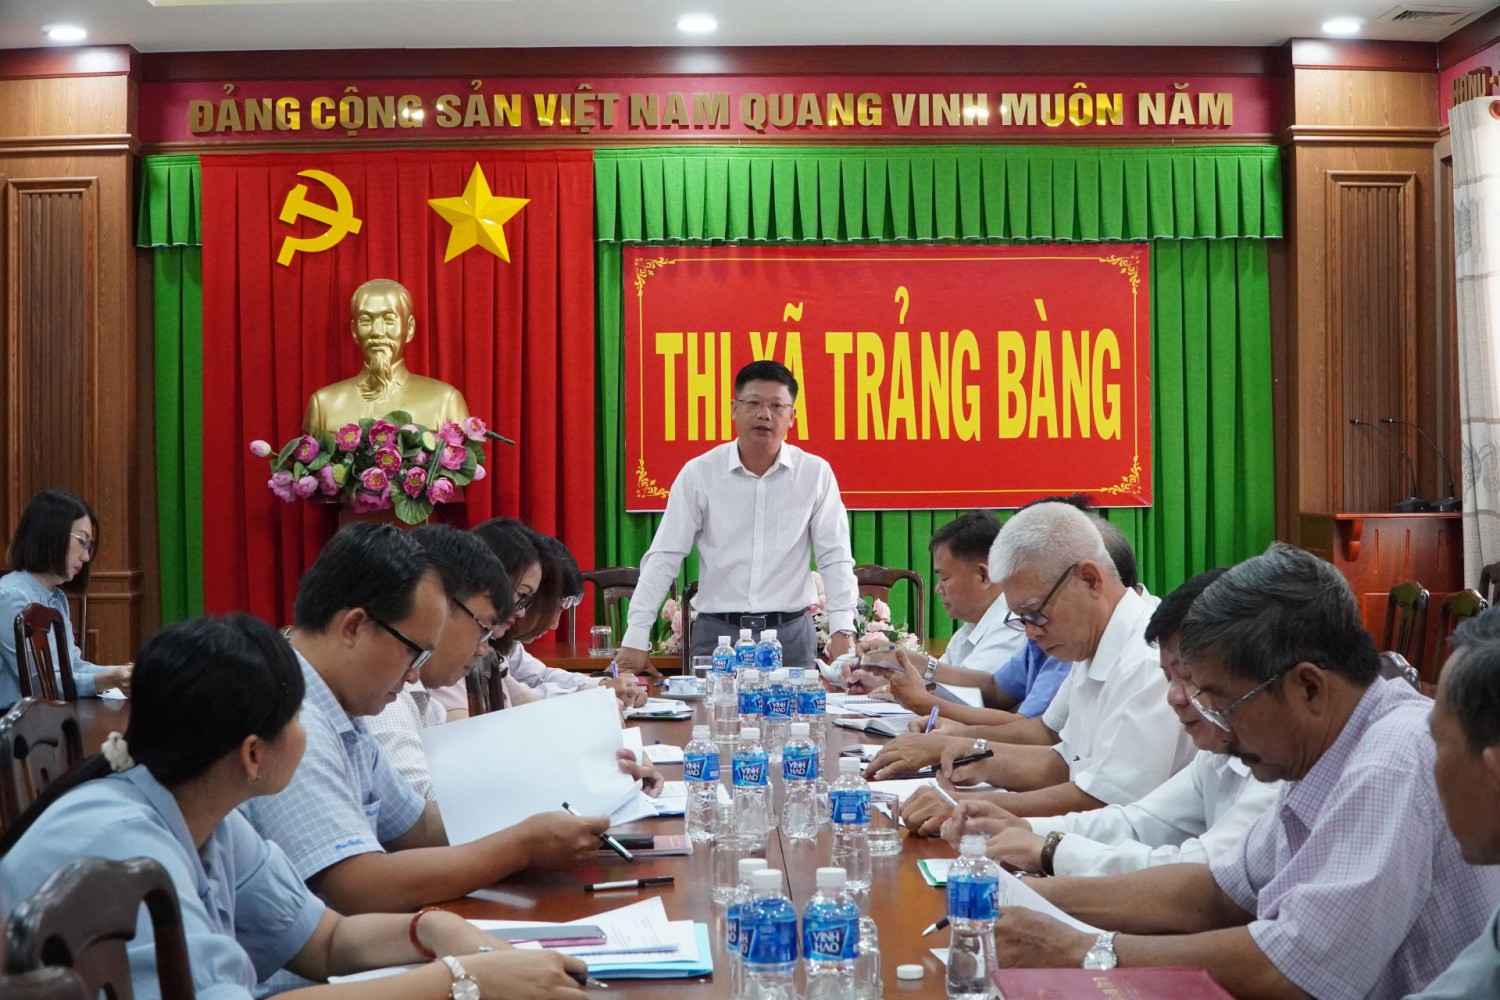 Ông Lê Minh Thế - Bí thư Thành uỷ Tây Ninh, trưởng đoàn khảo sát phát biểu tại buổi làm việc với UBND thị xã Trảng Bàng.